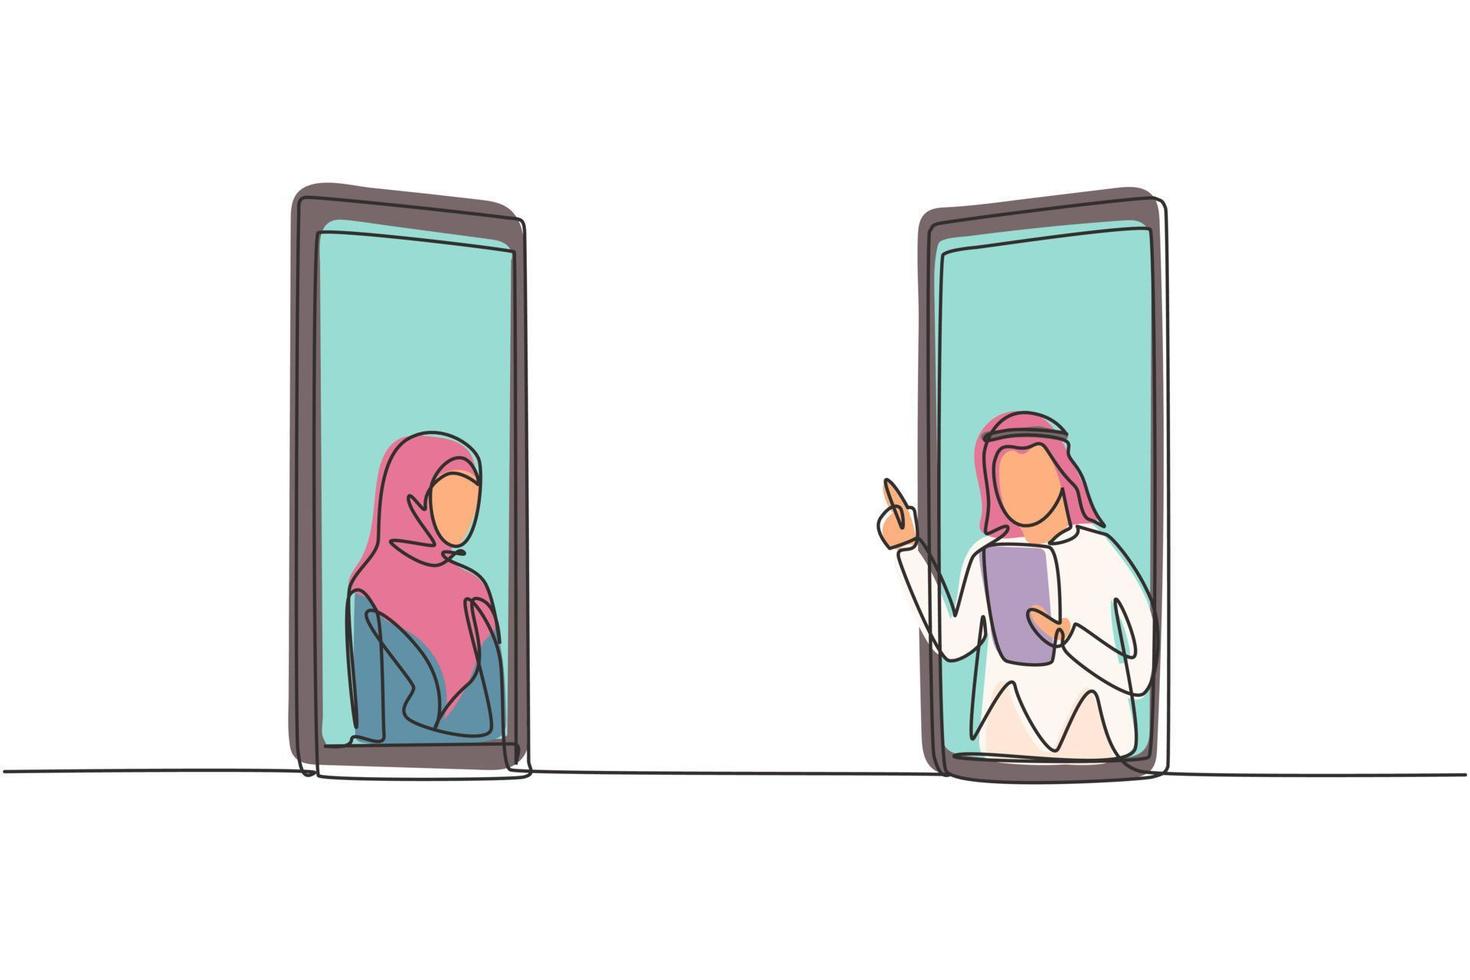 continua una linea che disegna due smartphone faccia a faccia e contiene una paziente hijab e un medico arabo con i loro corpi come se uscissero da uno smartphone. grafica vettoriale di disegno a linea singola